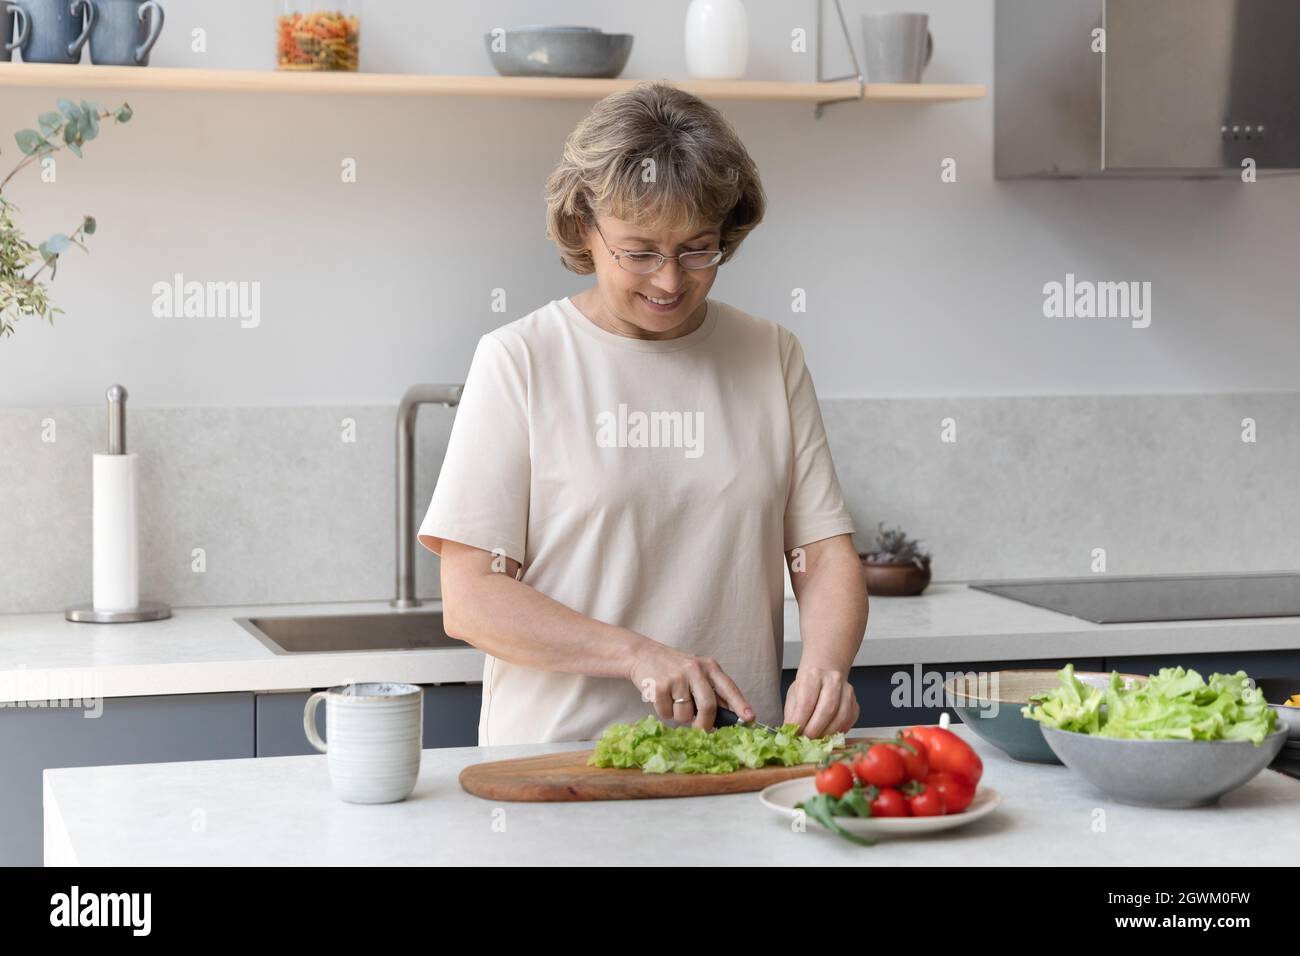 Glückliche, schöne Frau mittleren Alters, die Essen zubereitete. Stockfoto